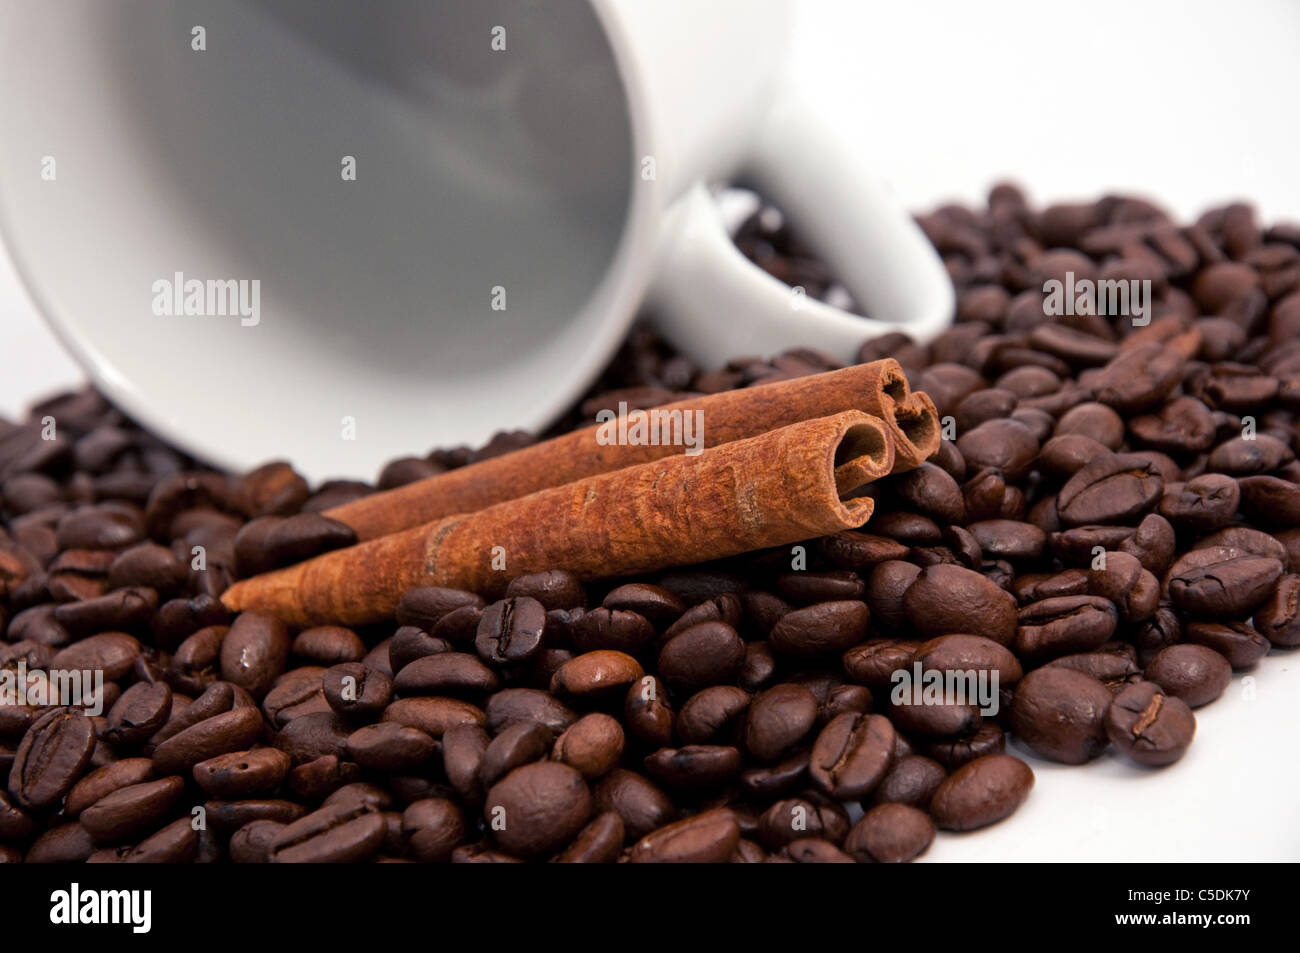 Les grains de café et le bâton de cannelle, près de l'image Banque D'Images